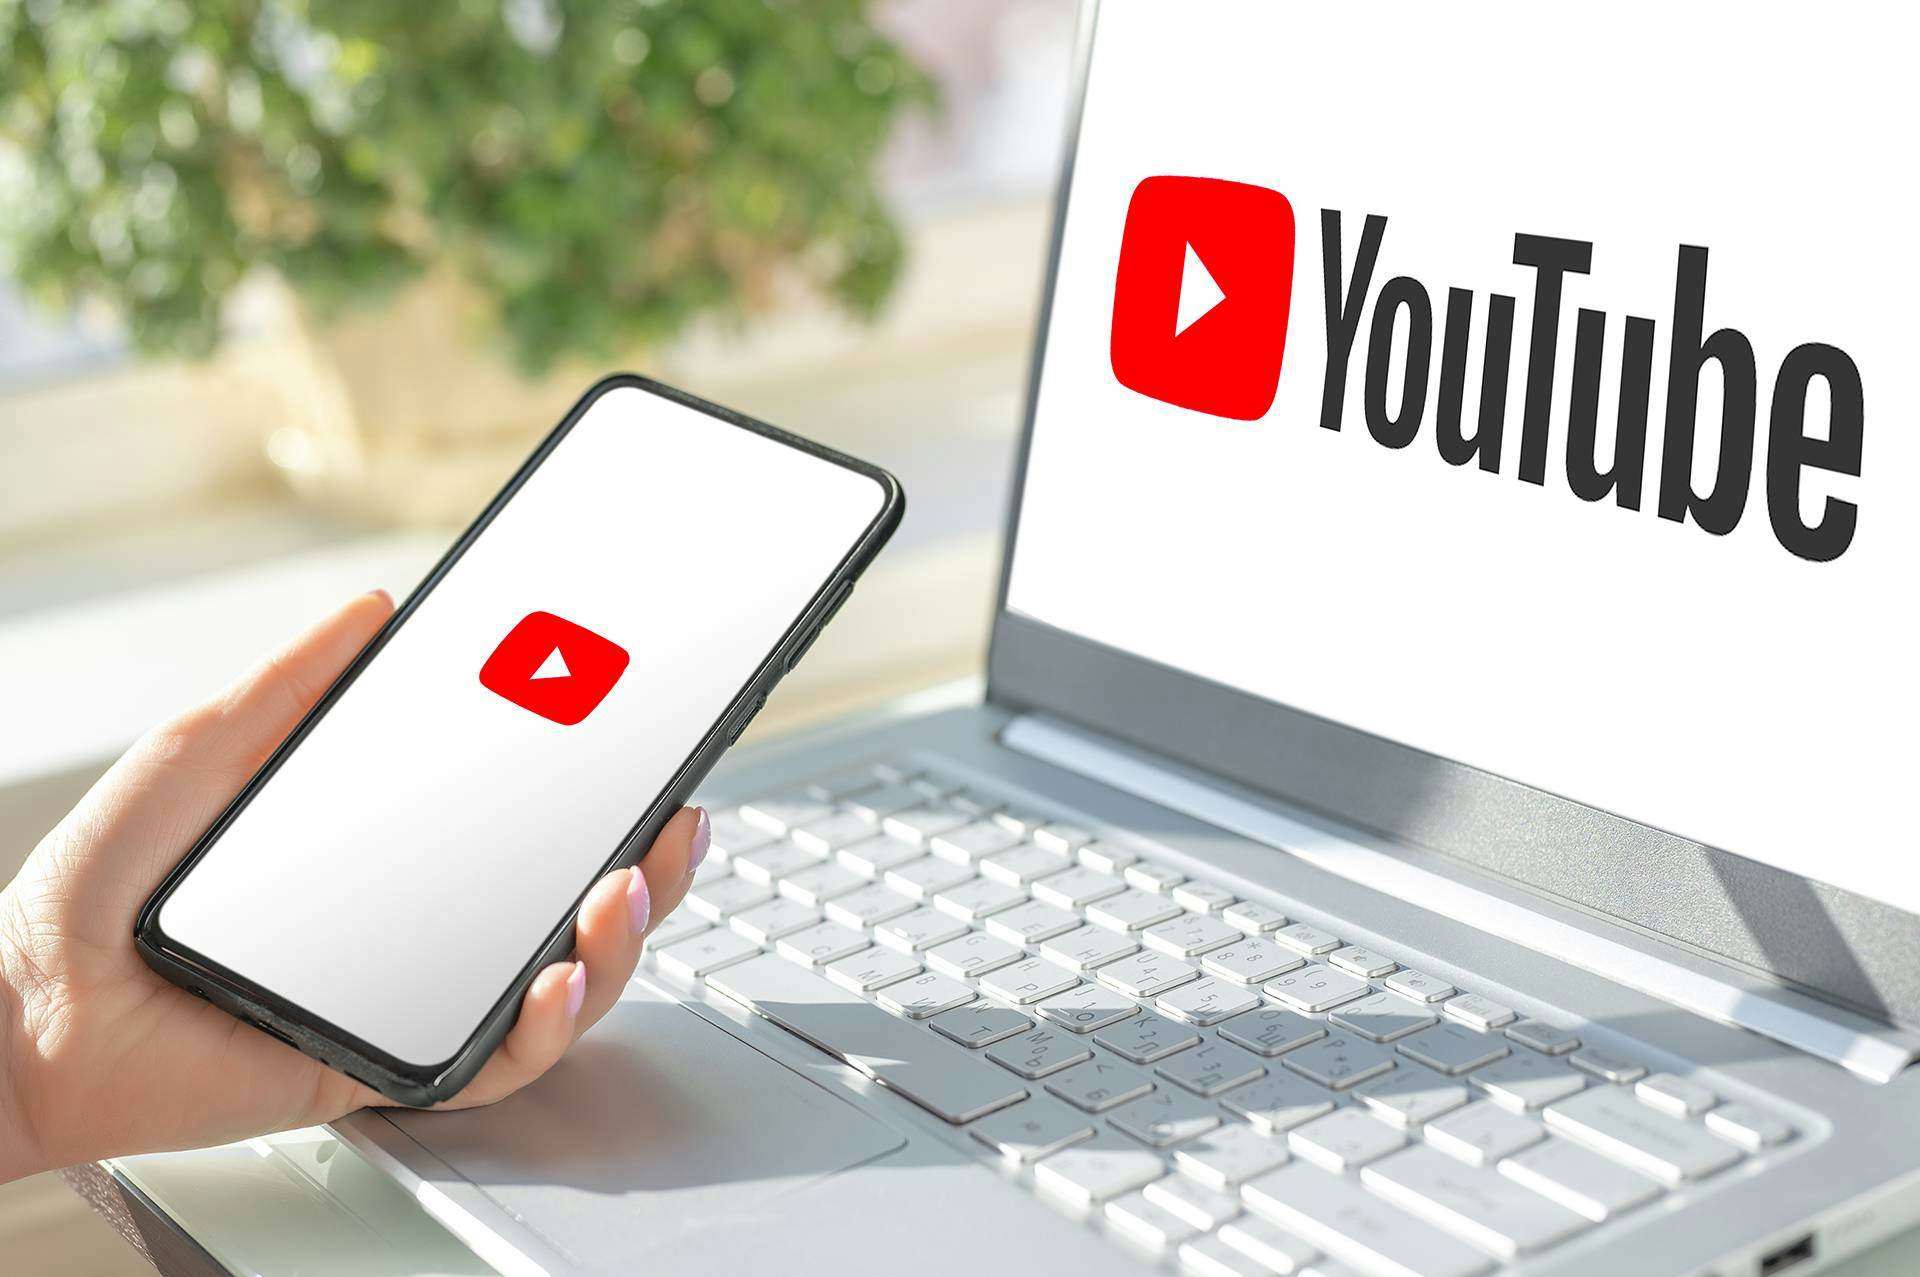 Videózás alapjai tanfolyam - YouTube titkok